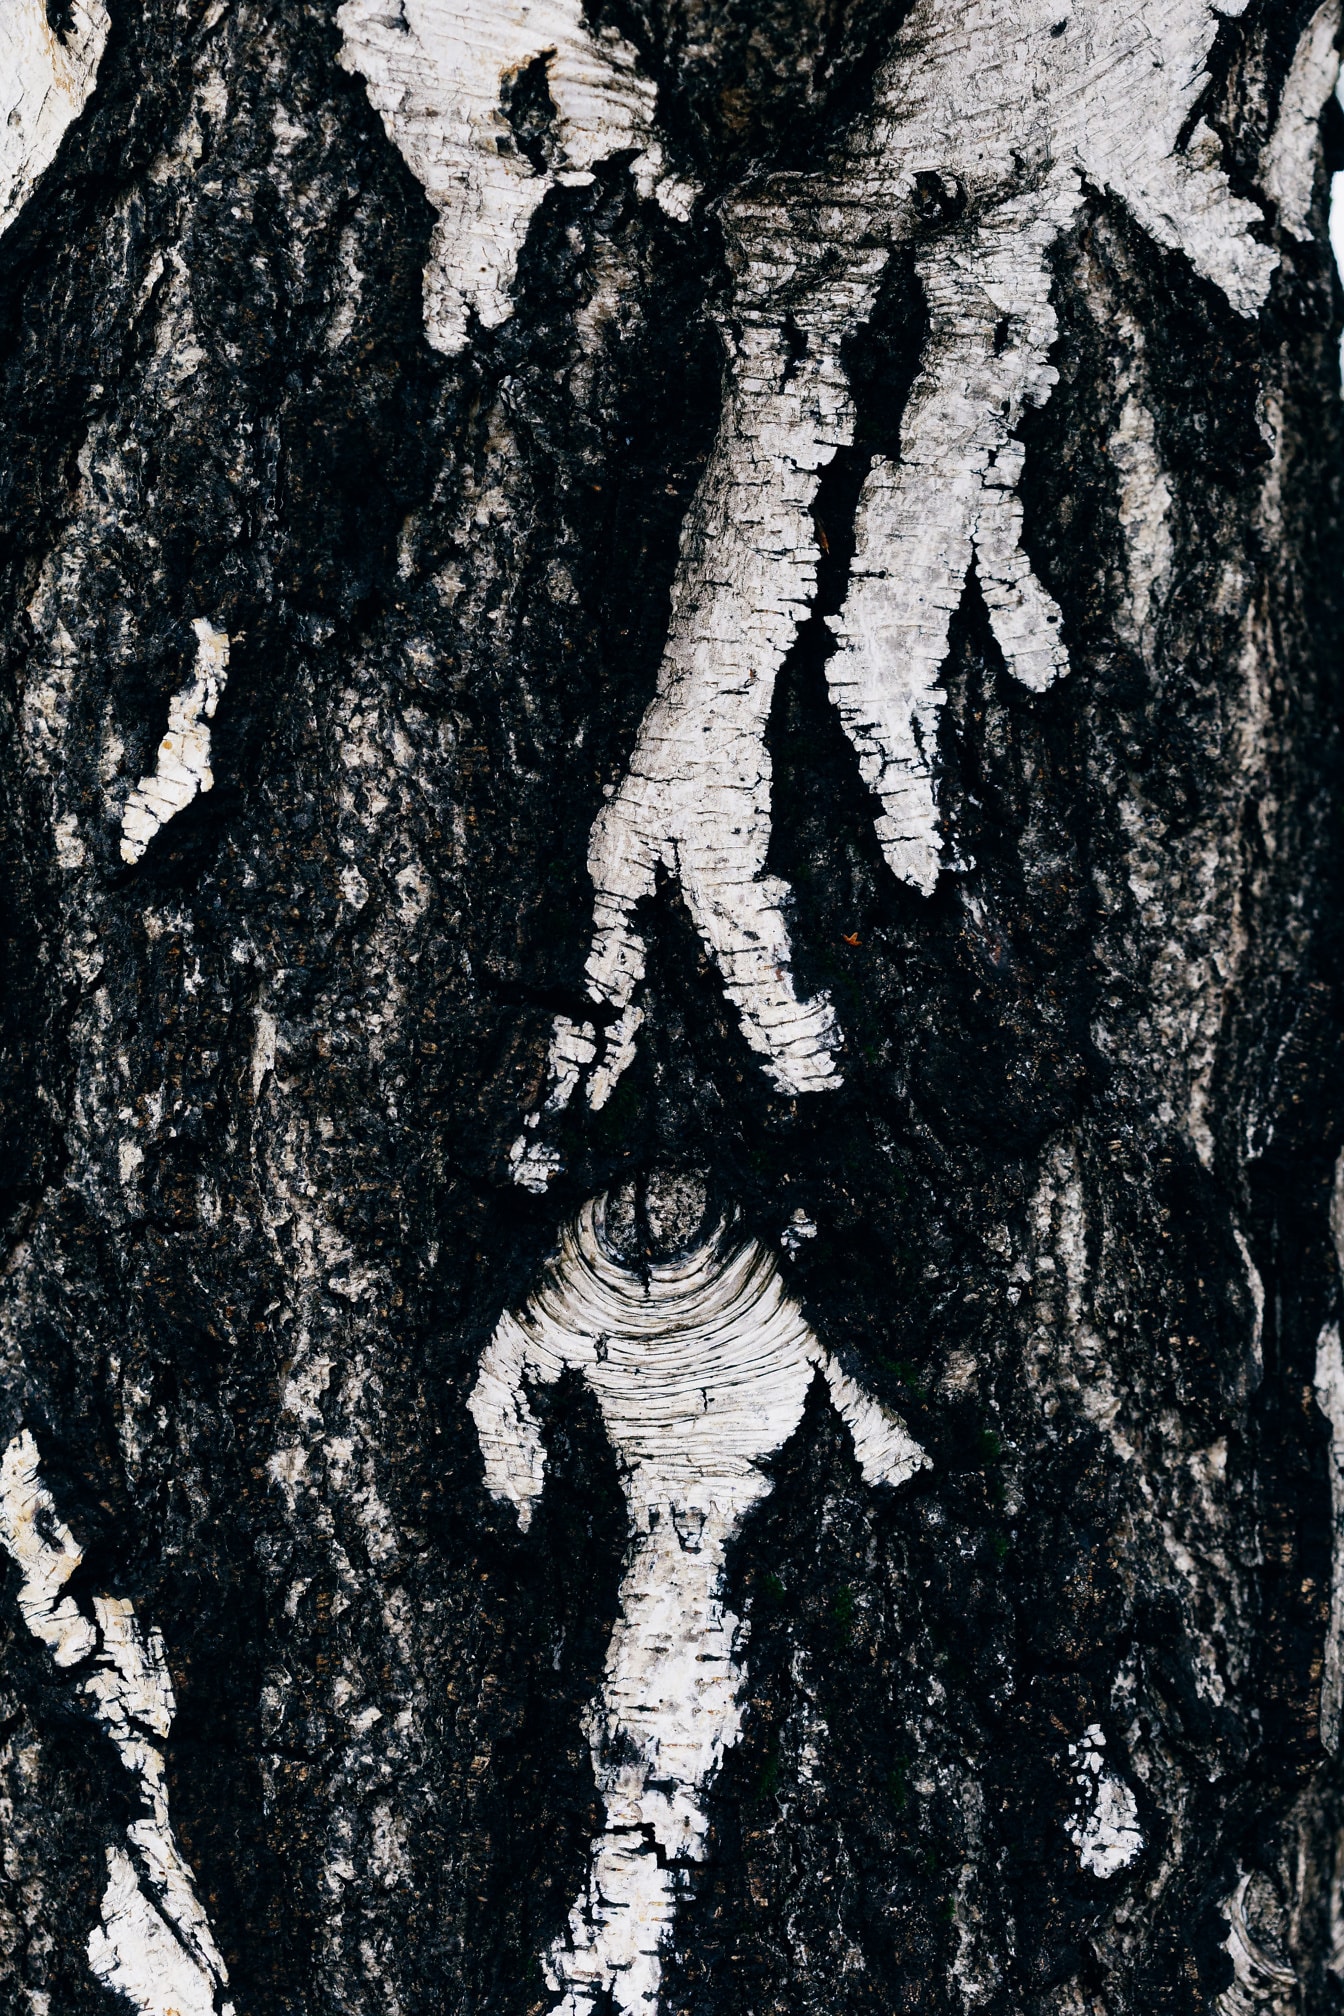 Sort og hvid tekstur af birkebark på træstamme nærbillede: foto